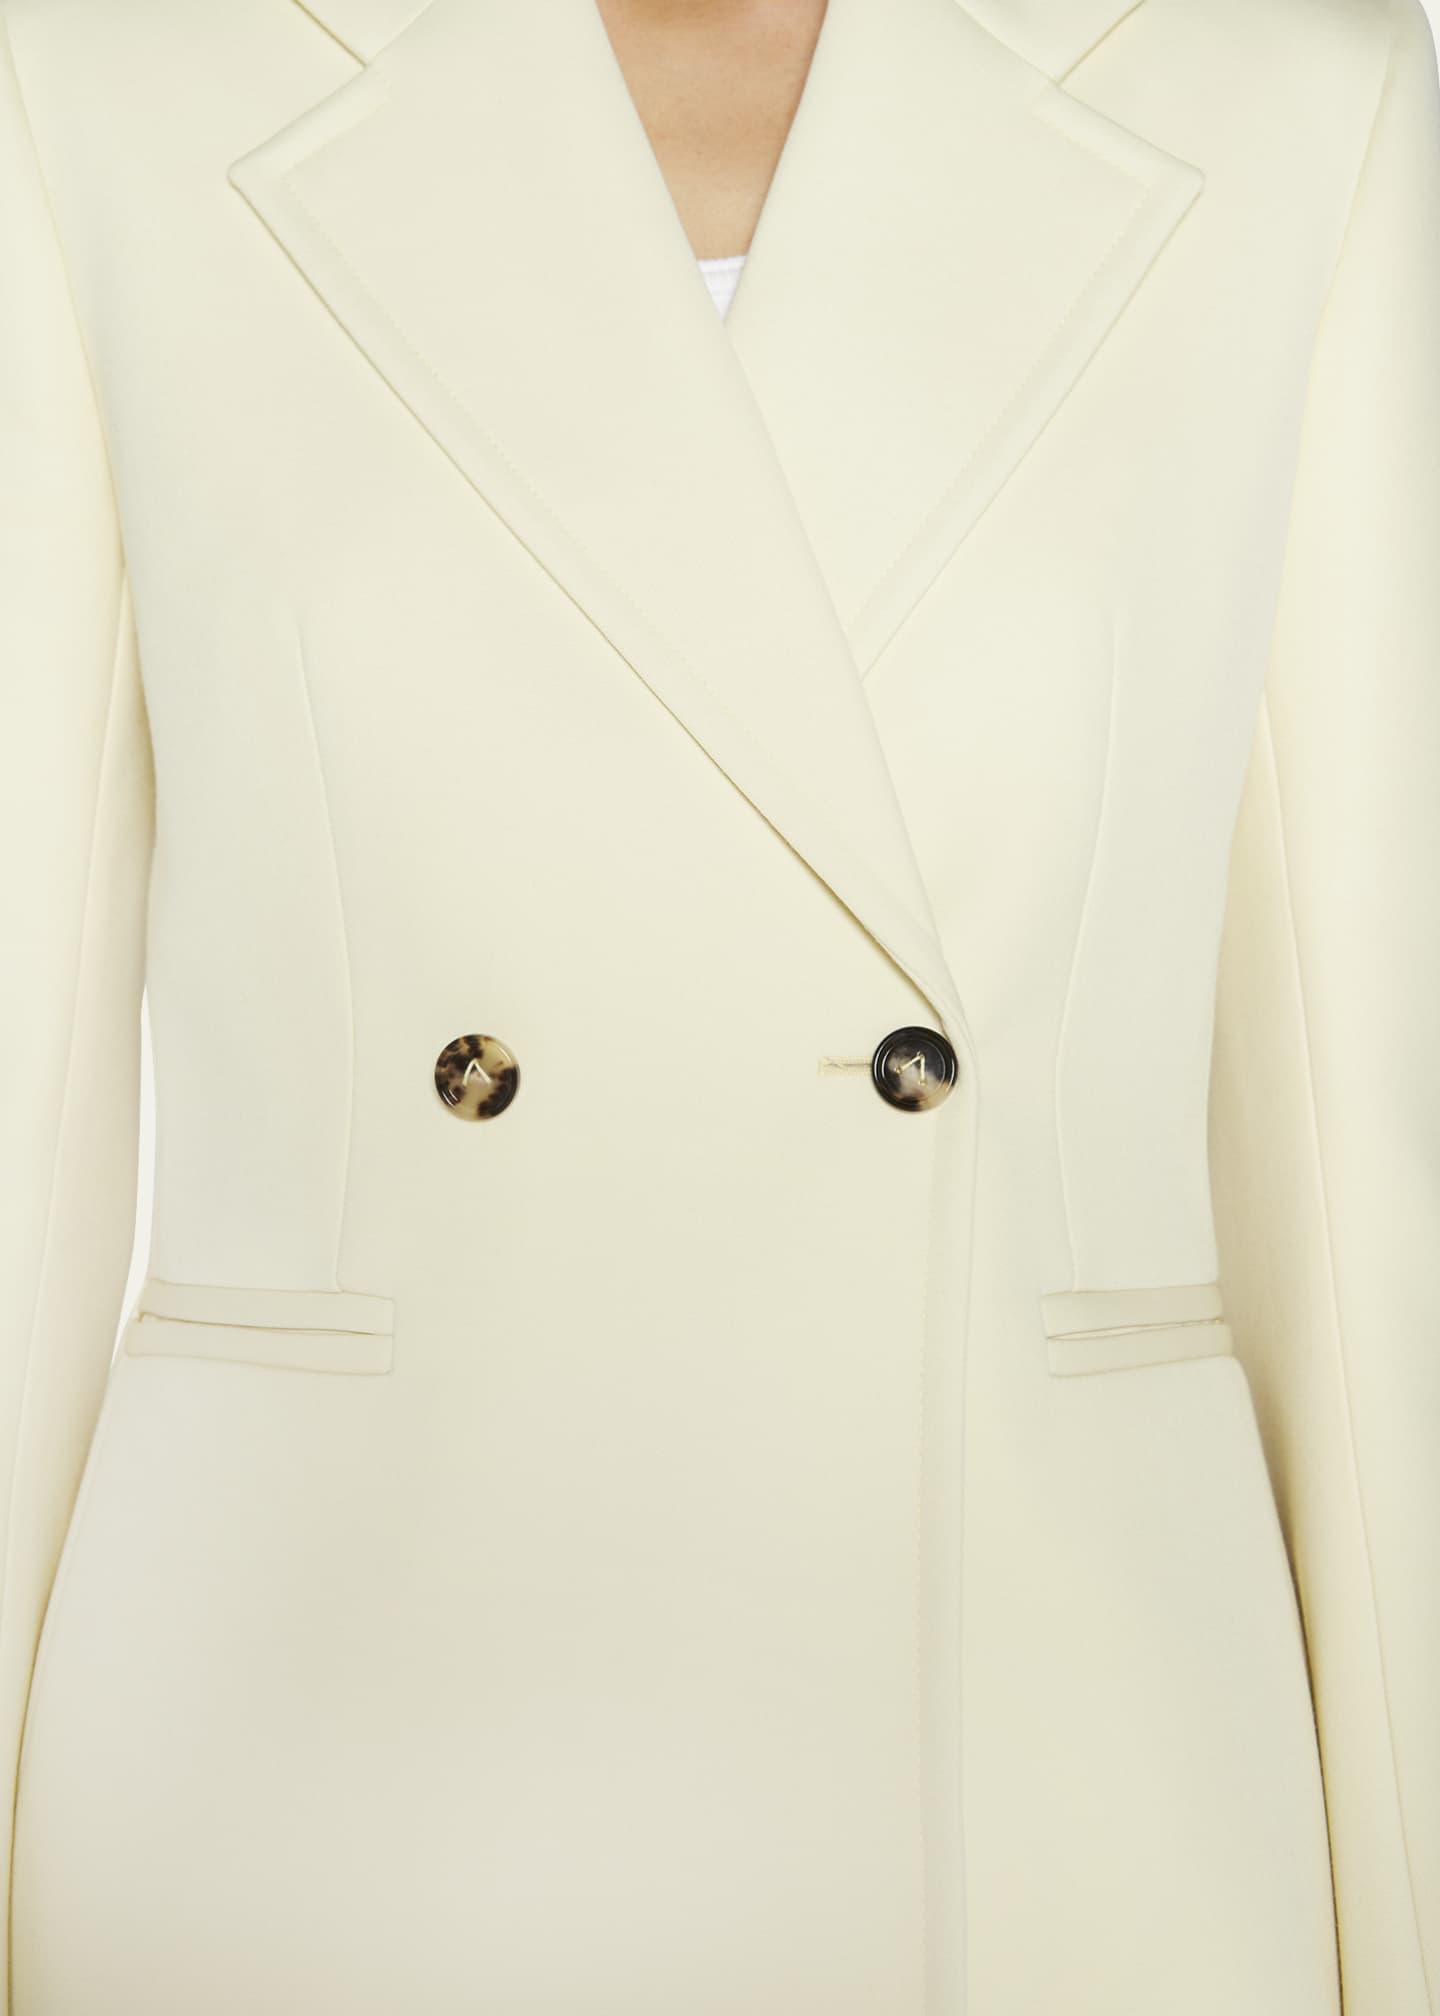 Bottega Veneta Wool Compact Suit Jacket w/ Curved Sleeves - Bergdorf ...